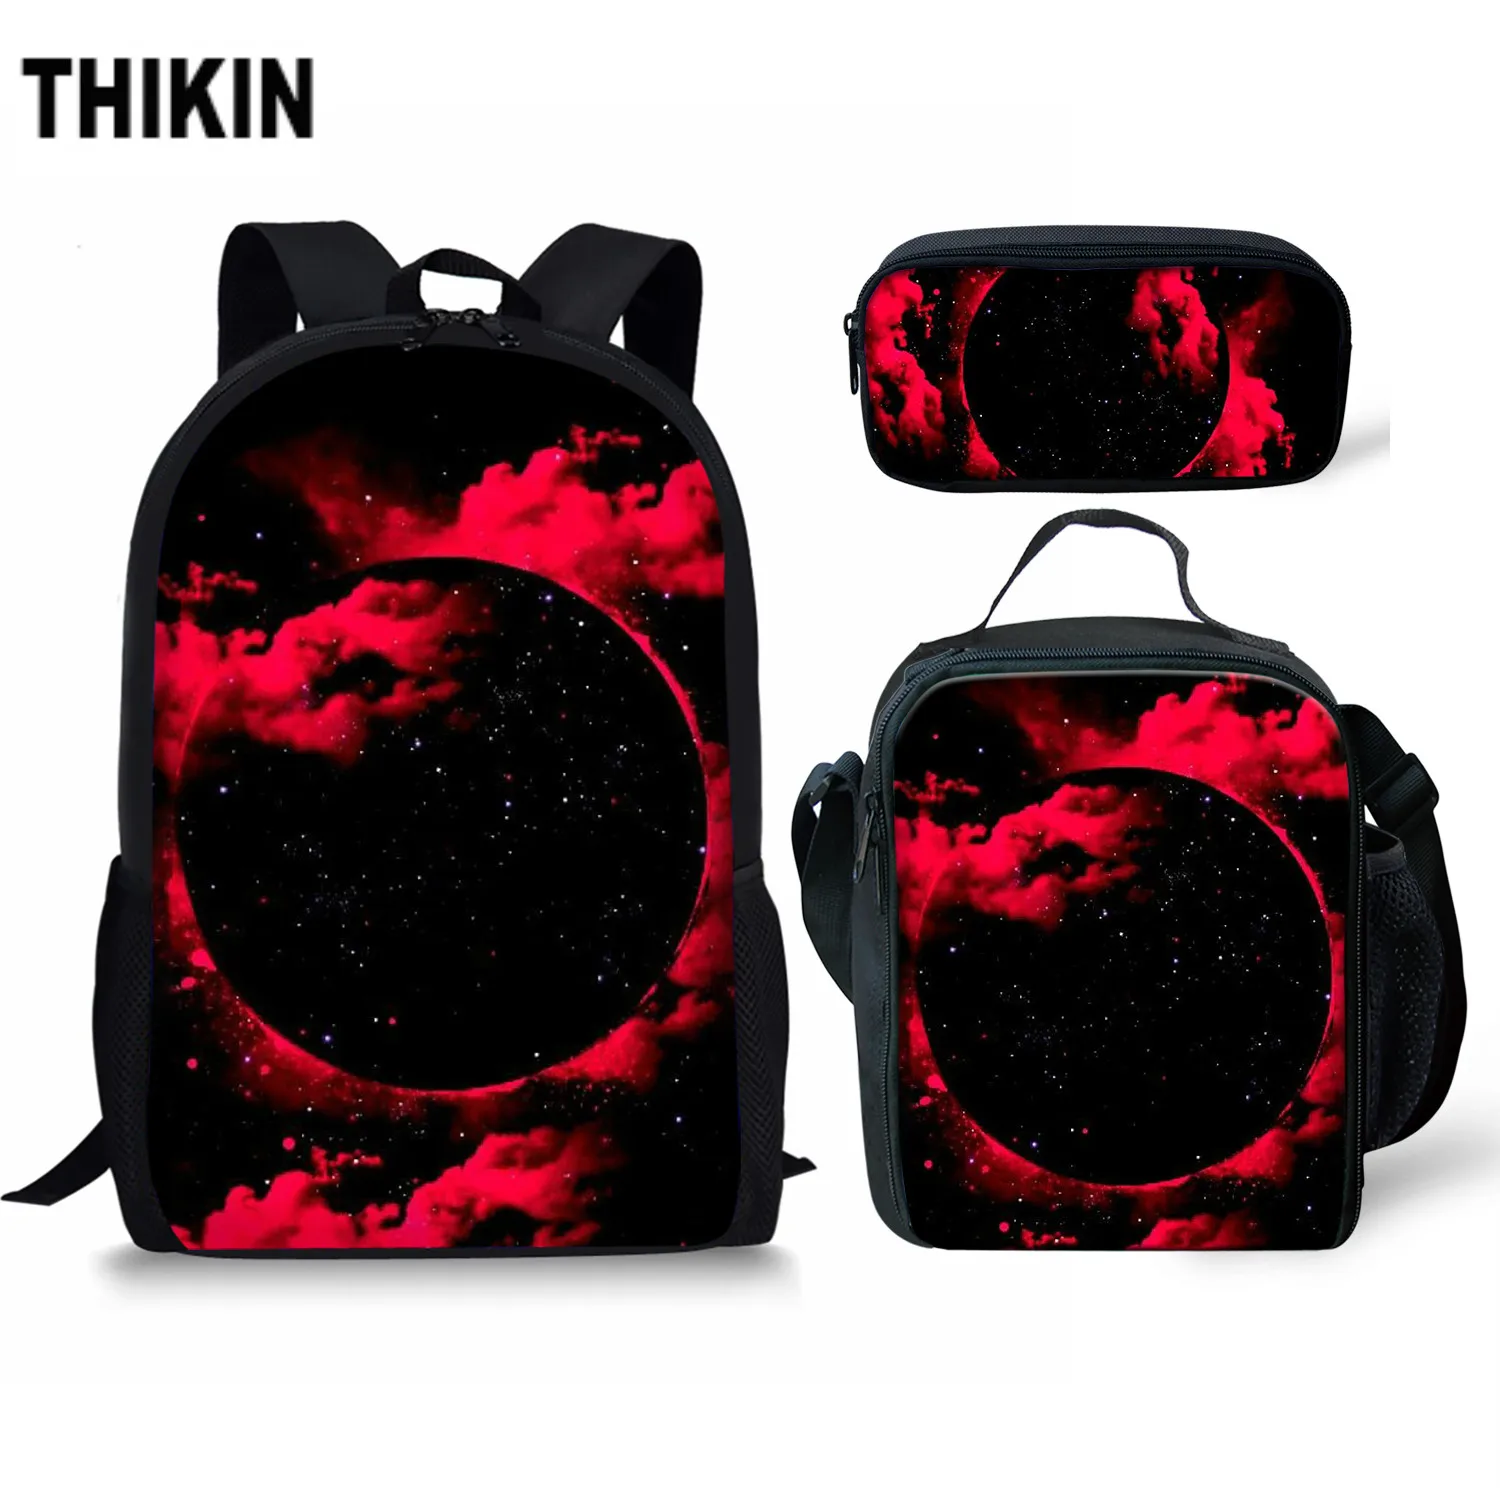 Тикин крутая галактика с красными облаками 3D школьная сумка набор/3 шт для подростков мальчиков дети ежедневник сумки студентов Mochilas